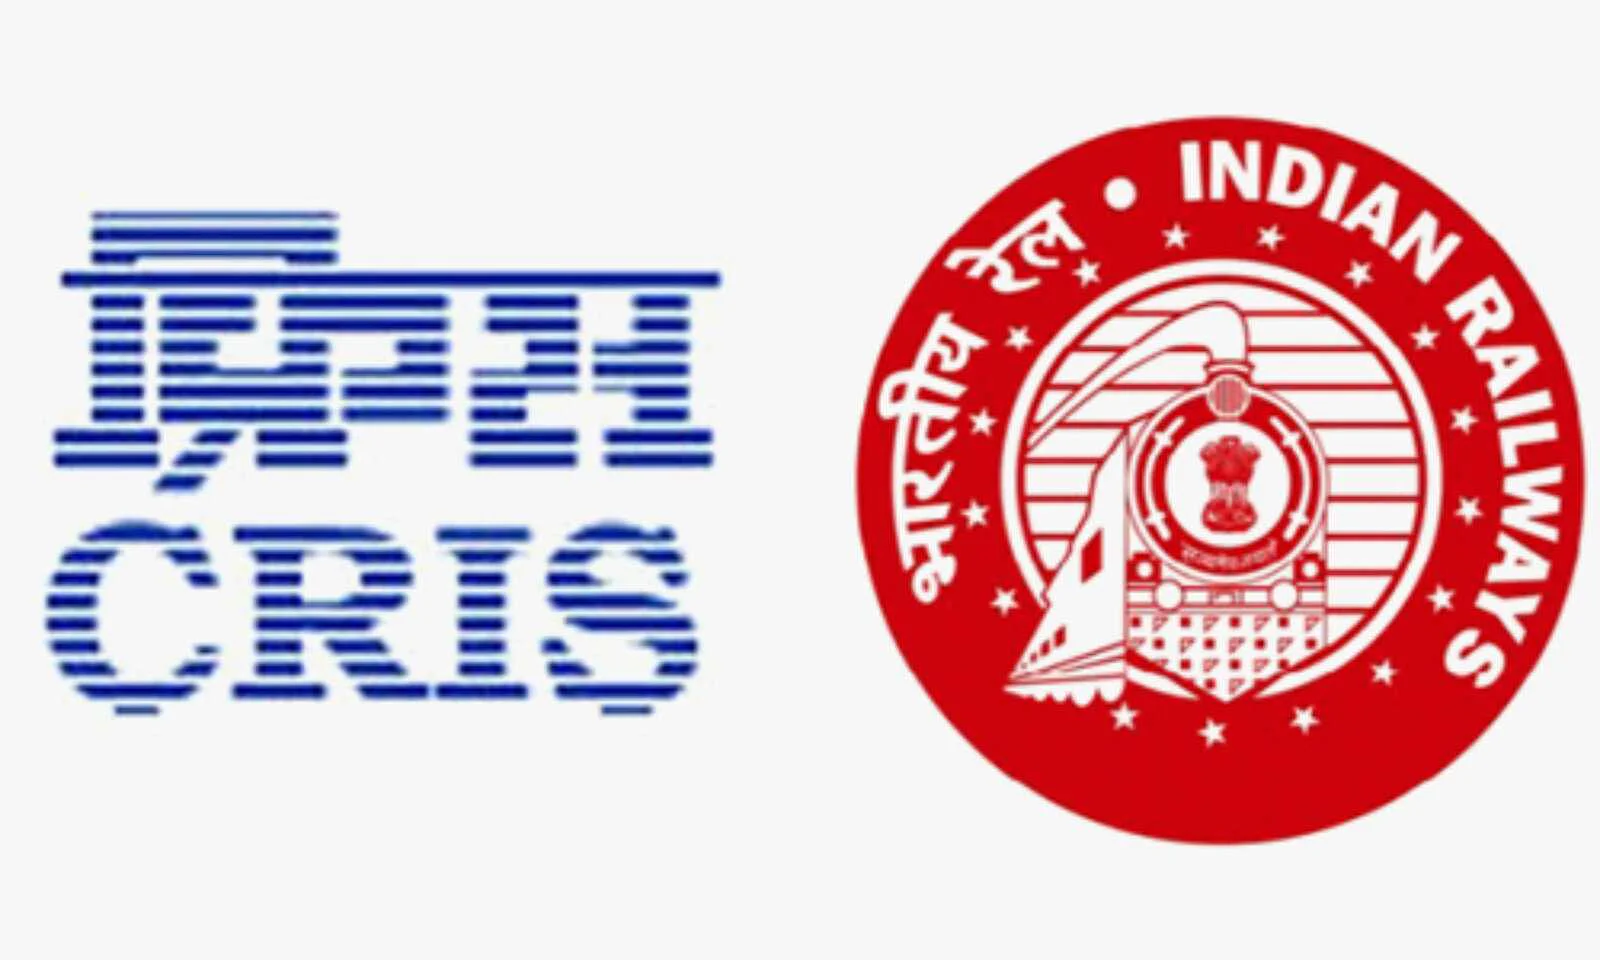 CRIS Recruitment 2022 | रेलवे में सरकारी नौकरी के पदों पर निकली है वैकेंसी, सिर्फ दो दिन बचा है समय, जल्द करें आवेदन | How to CRIS JOB Apply Step By Step, Last Date More Details in Hindi